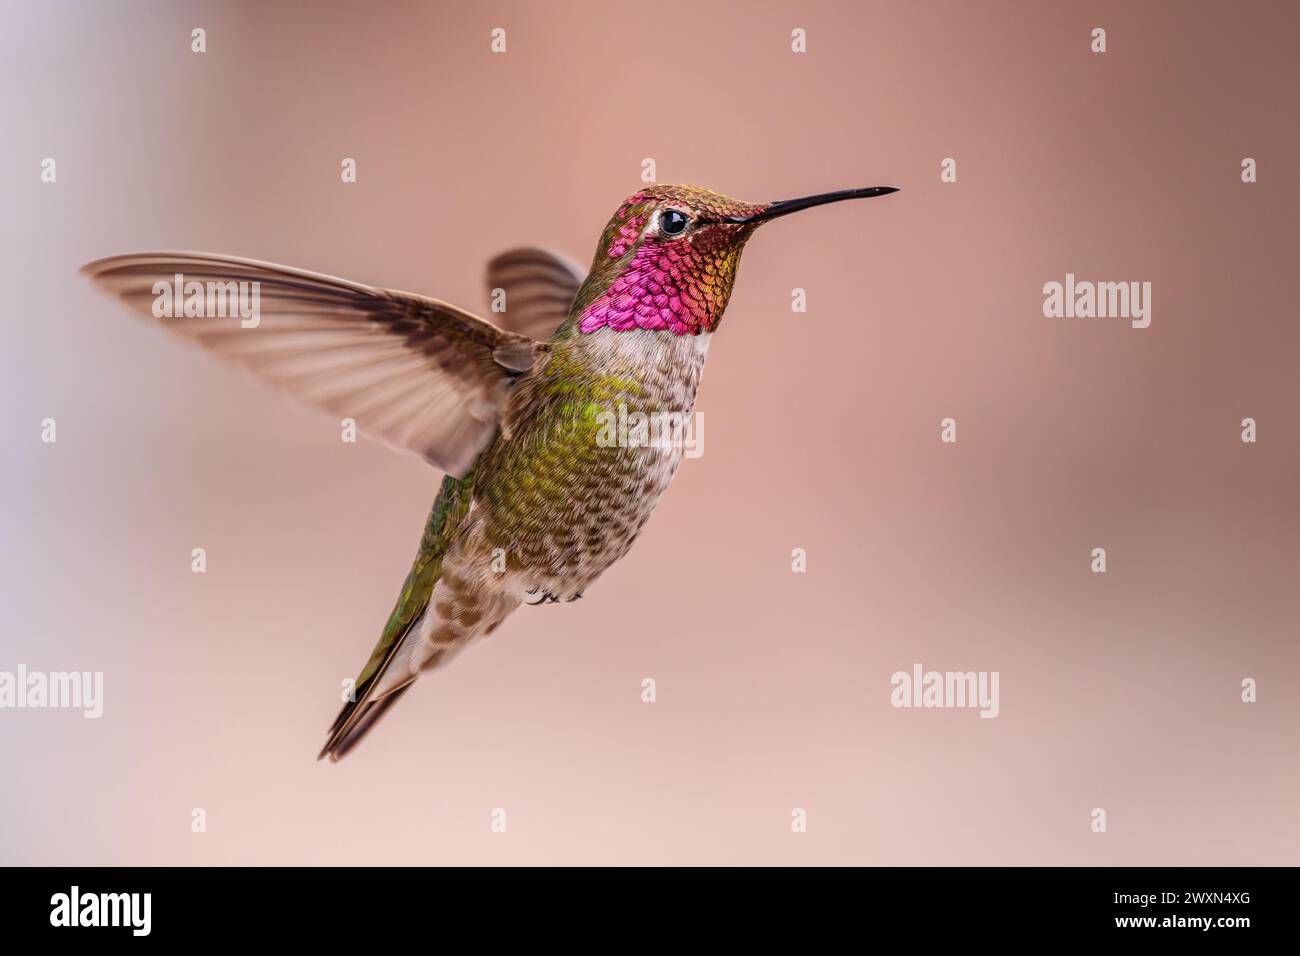 Ein Annas Kolibri im Flug. Seitenansicht mit Flügelrückseite und leichter Bewegungsunschärfe in den Flügeln. Leuchtend rosa Gorget oder Kehle und grüner Körper. Stockfoto